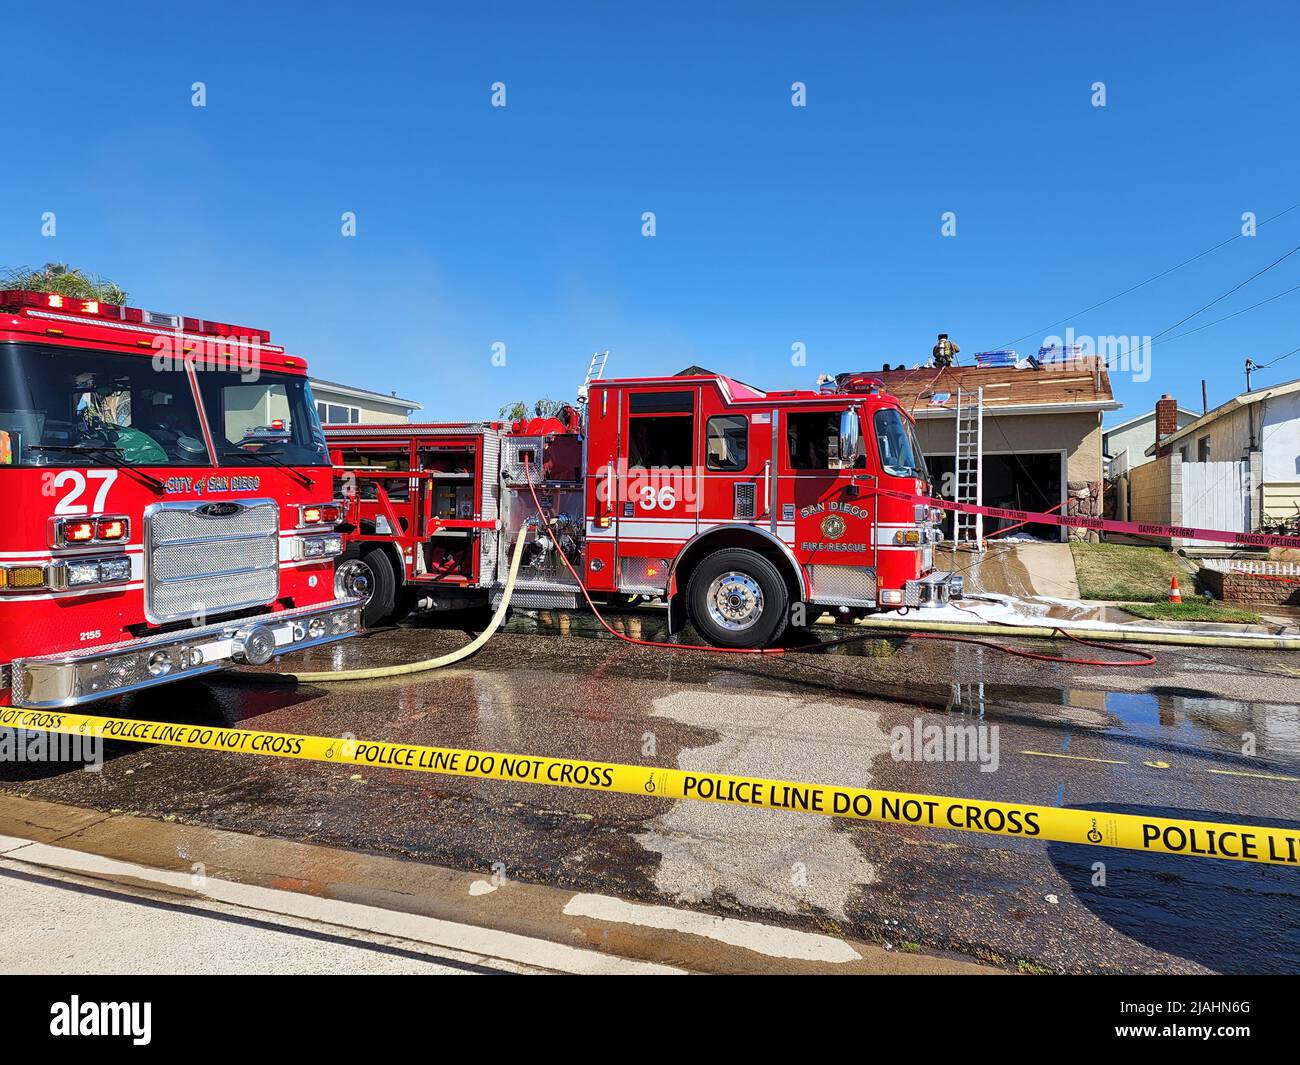 SDFD Engine 36 und Engine 27 am Ort eines Hausbrands Stockfoto